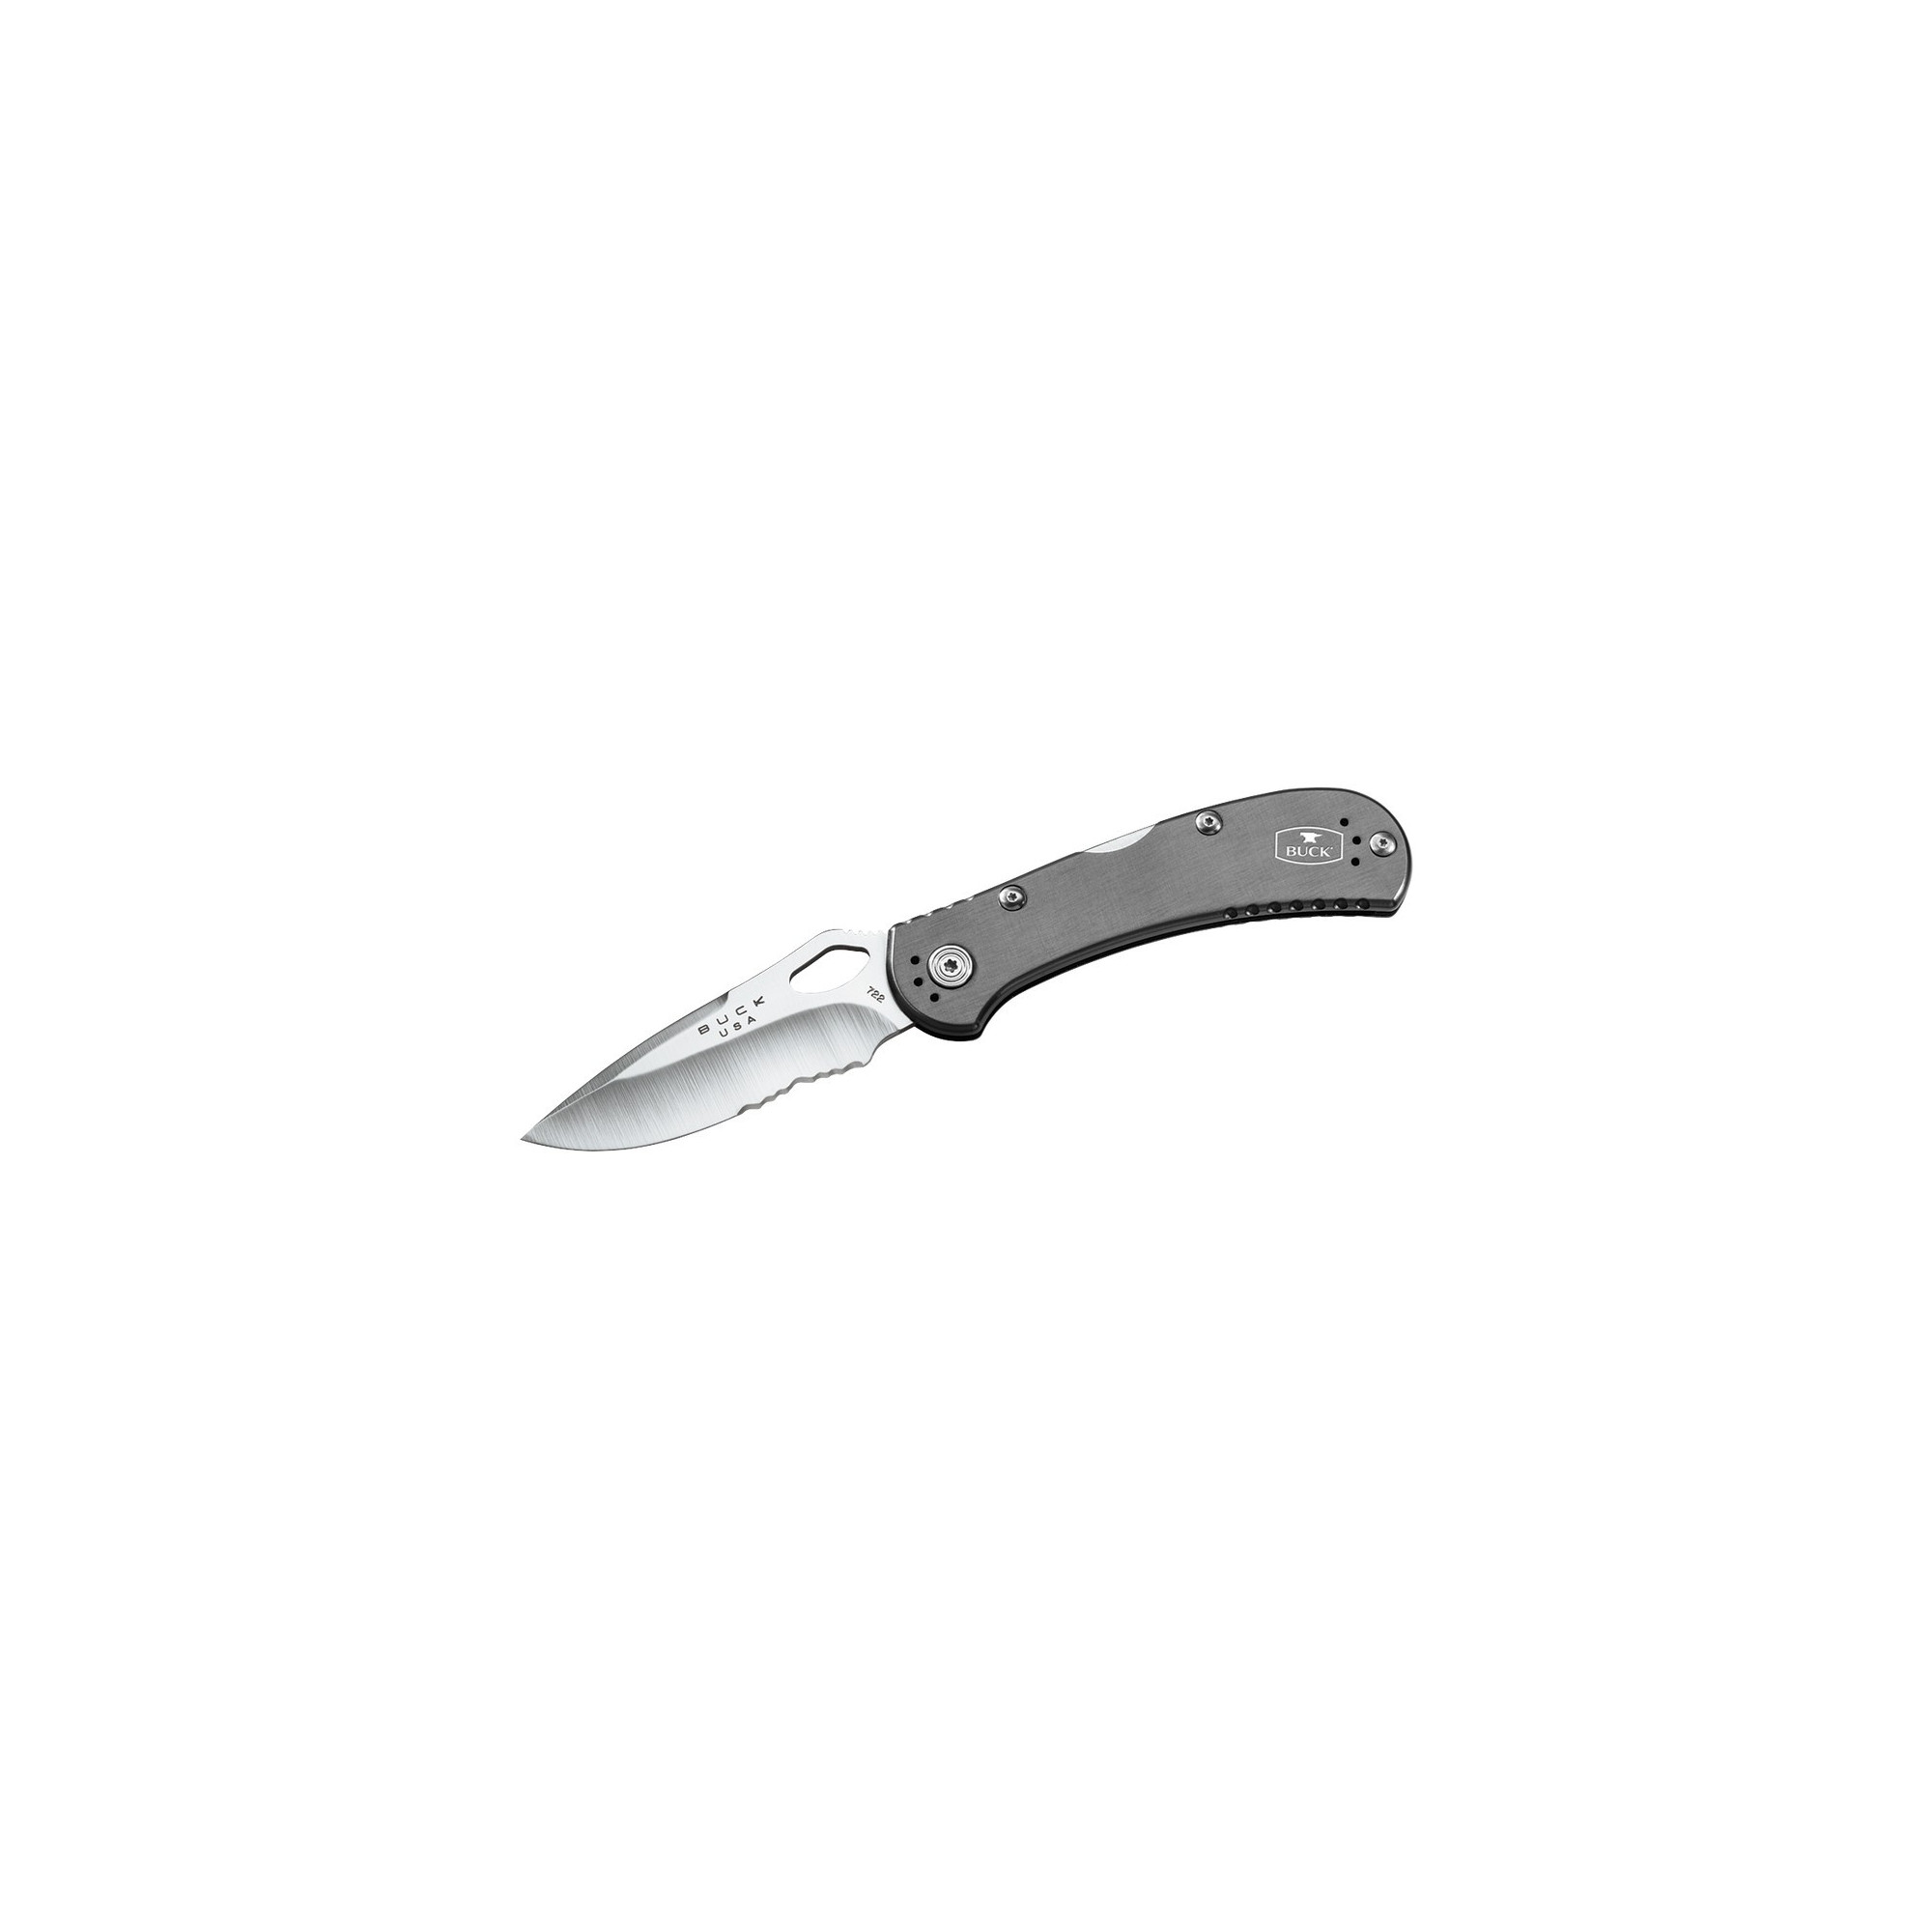 Couteau Buck Spitfire 0722 lame de 8.1 cm